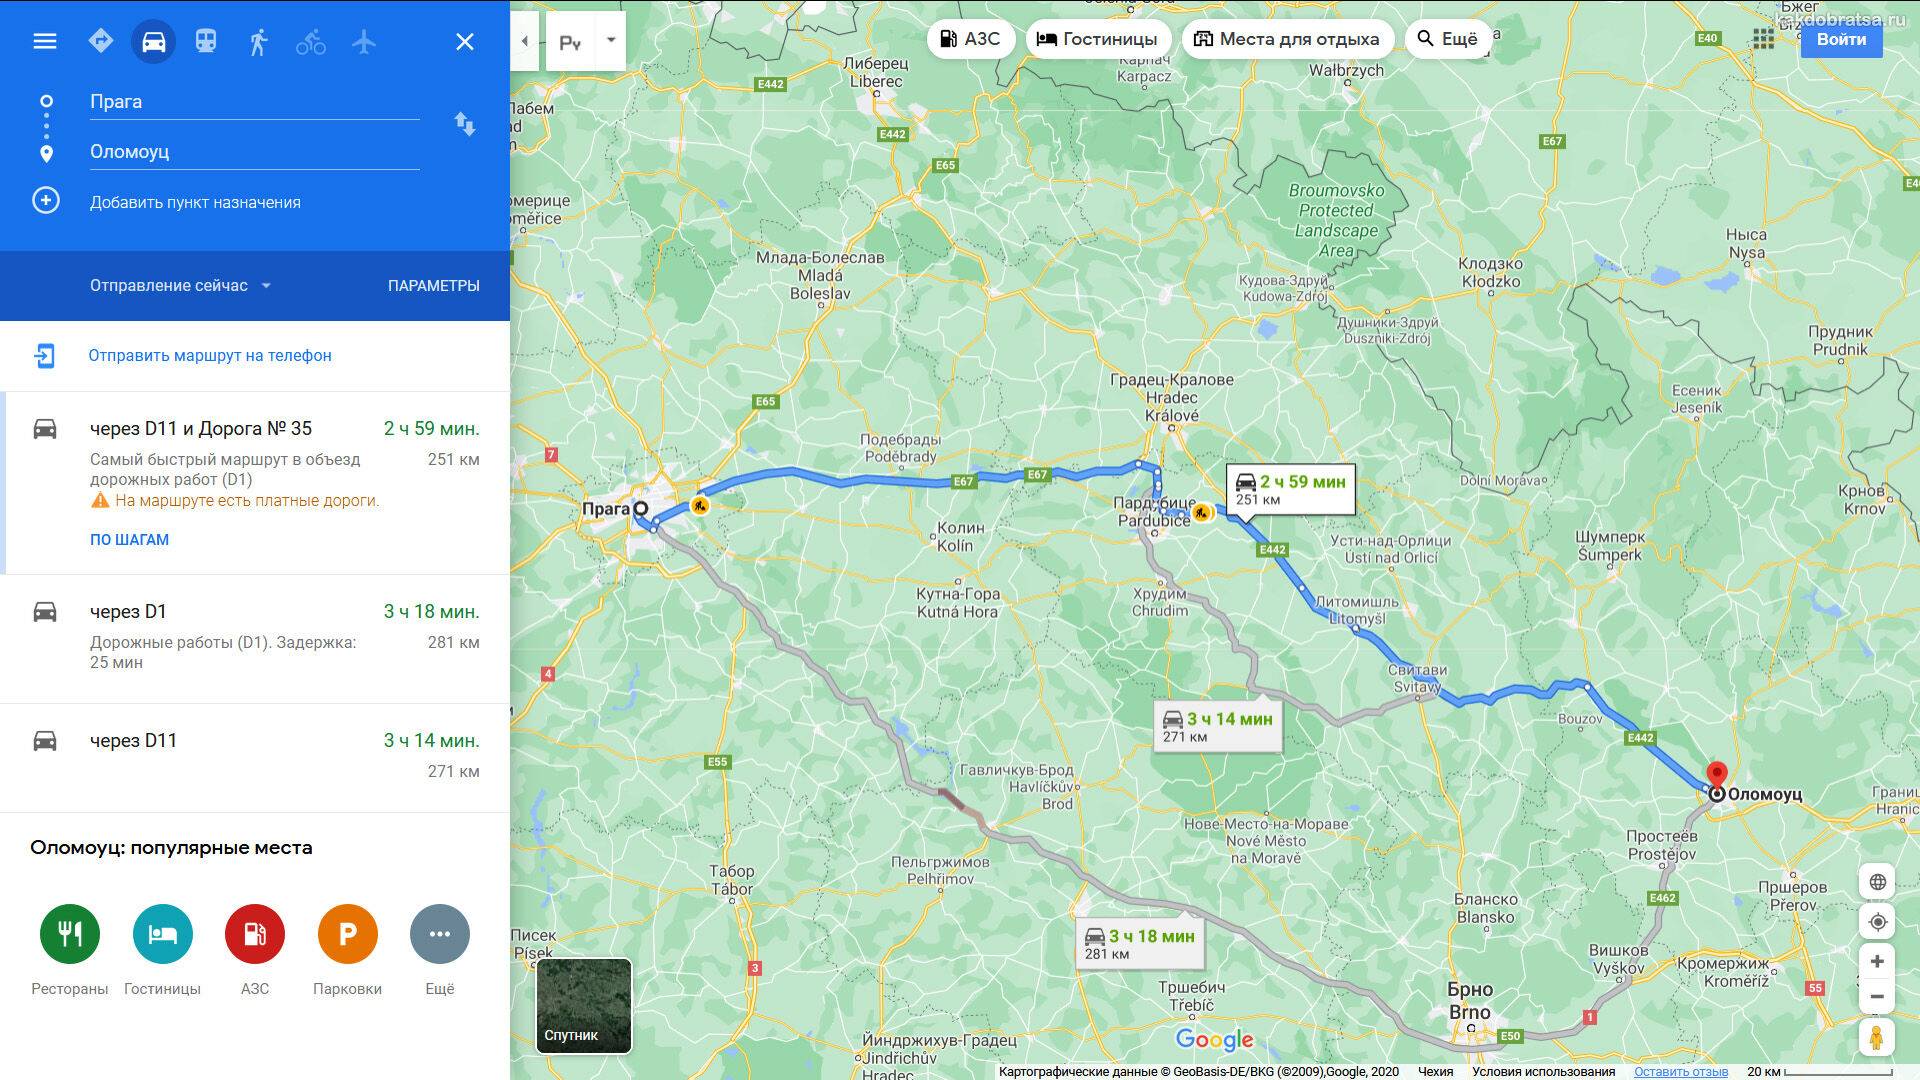 Как добраться из праги во франкфурт-на-майне: поезд, автобус, машина. расстояние, цены на билеты и расписание 2021 на туристер.ру